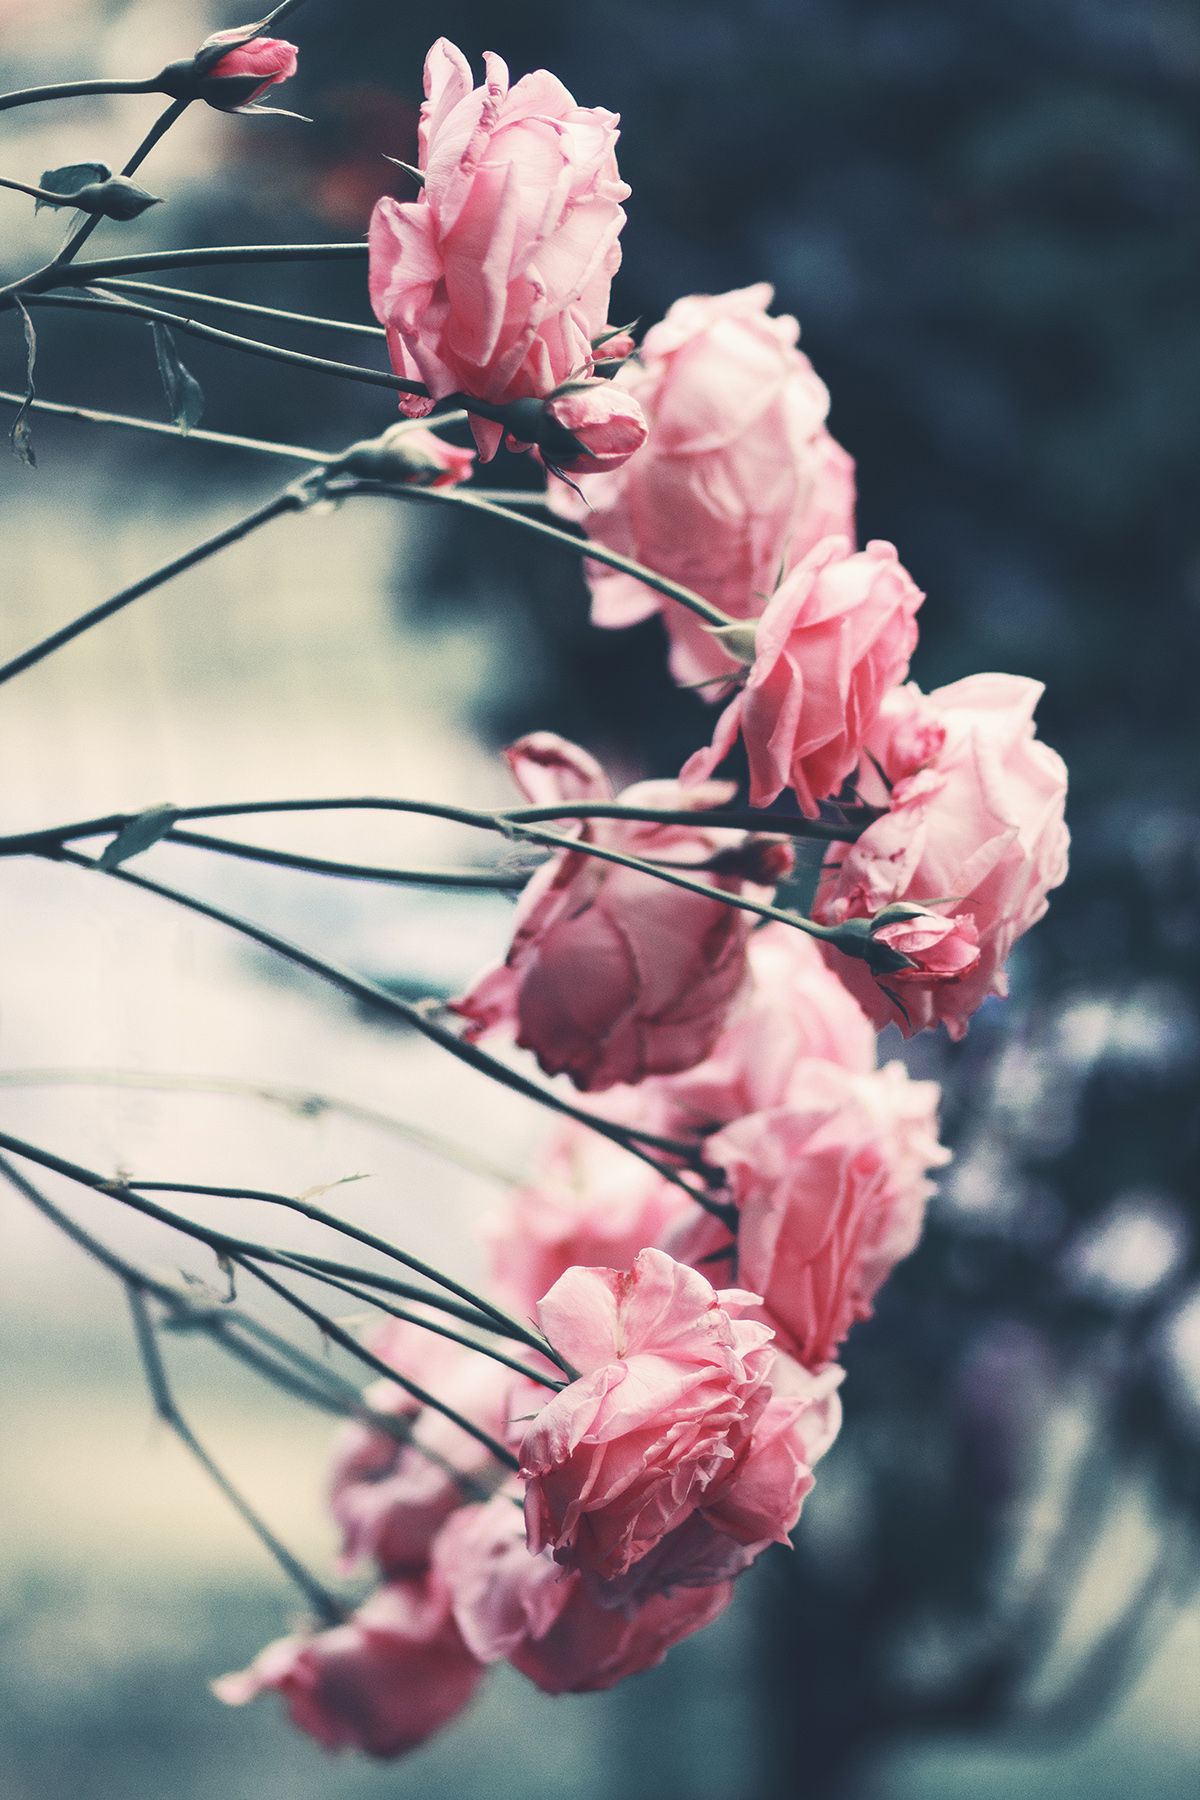 Significato dei fiori: a ogni colore di rosa il suo significato